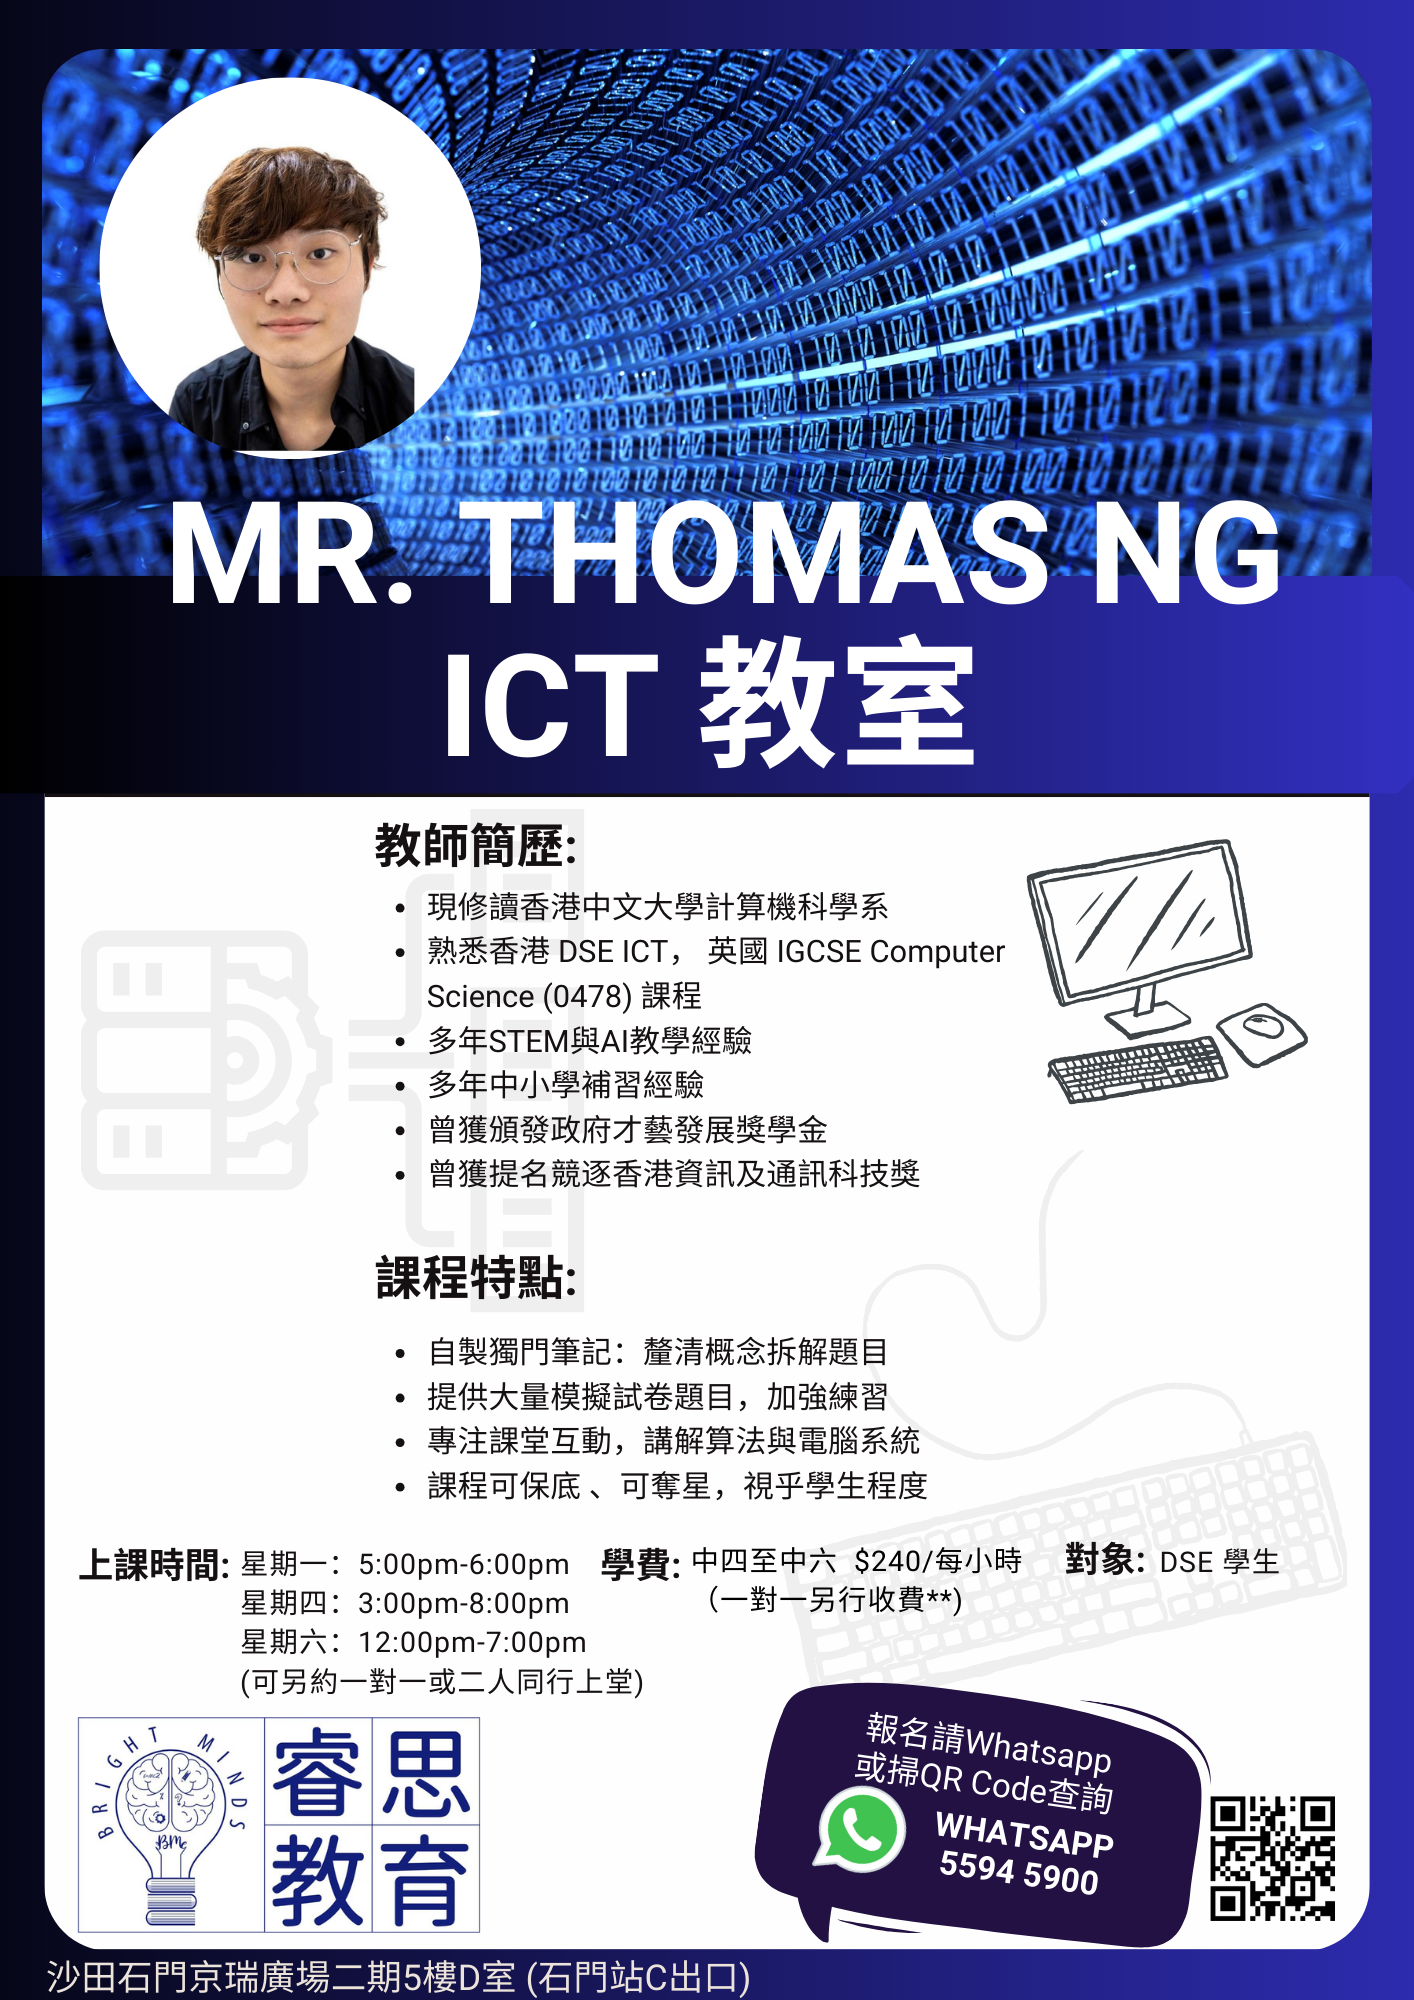 Miss. Thomas Ng ICT 課程